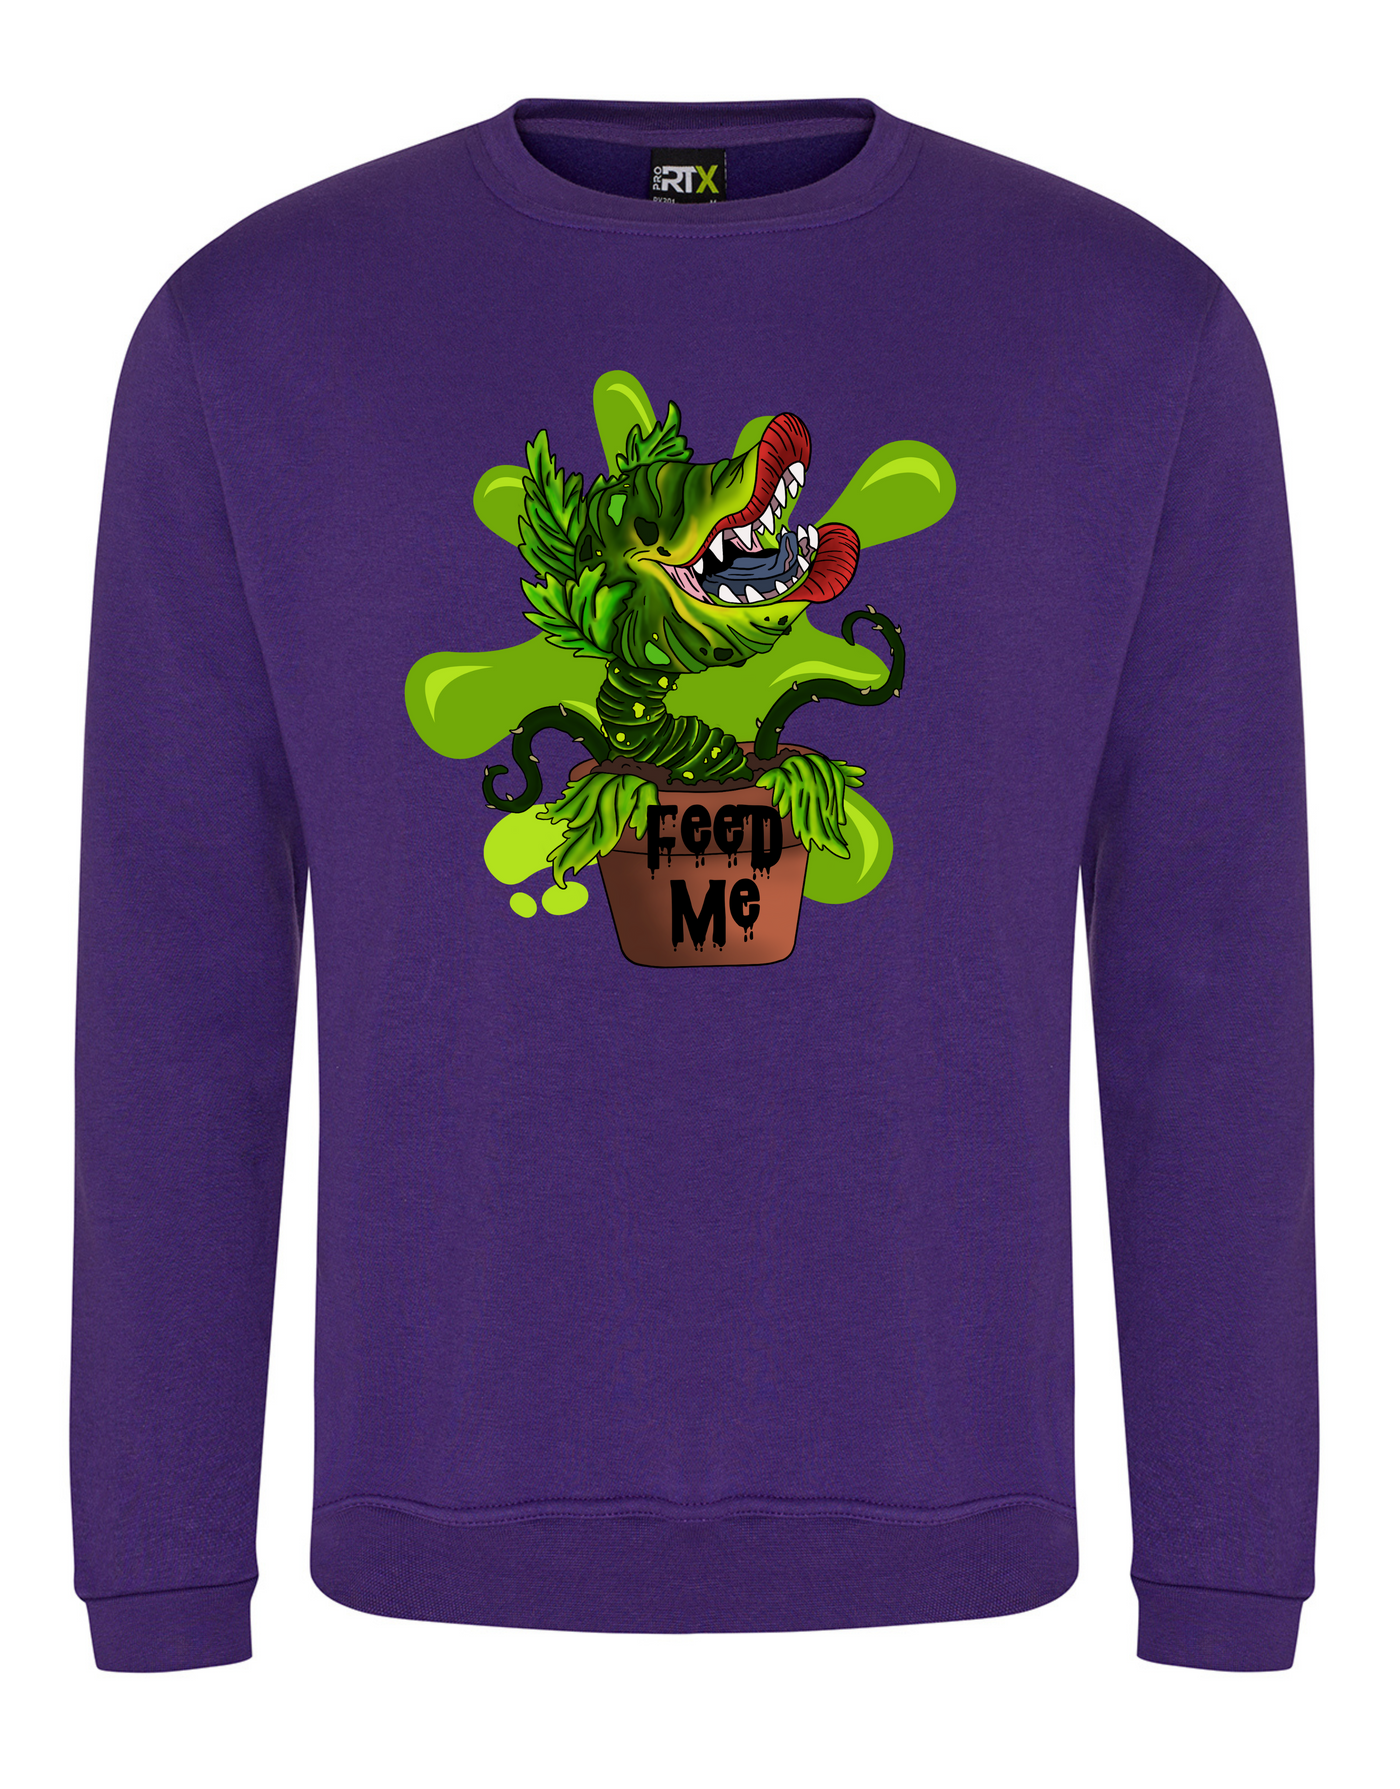 Purple "Feed Me" Unisex Sweatshirt